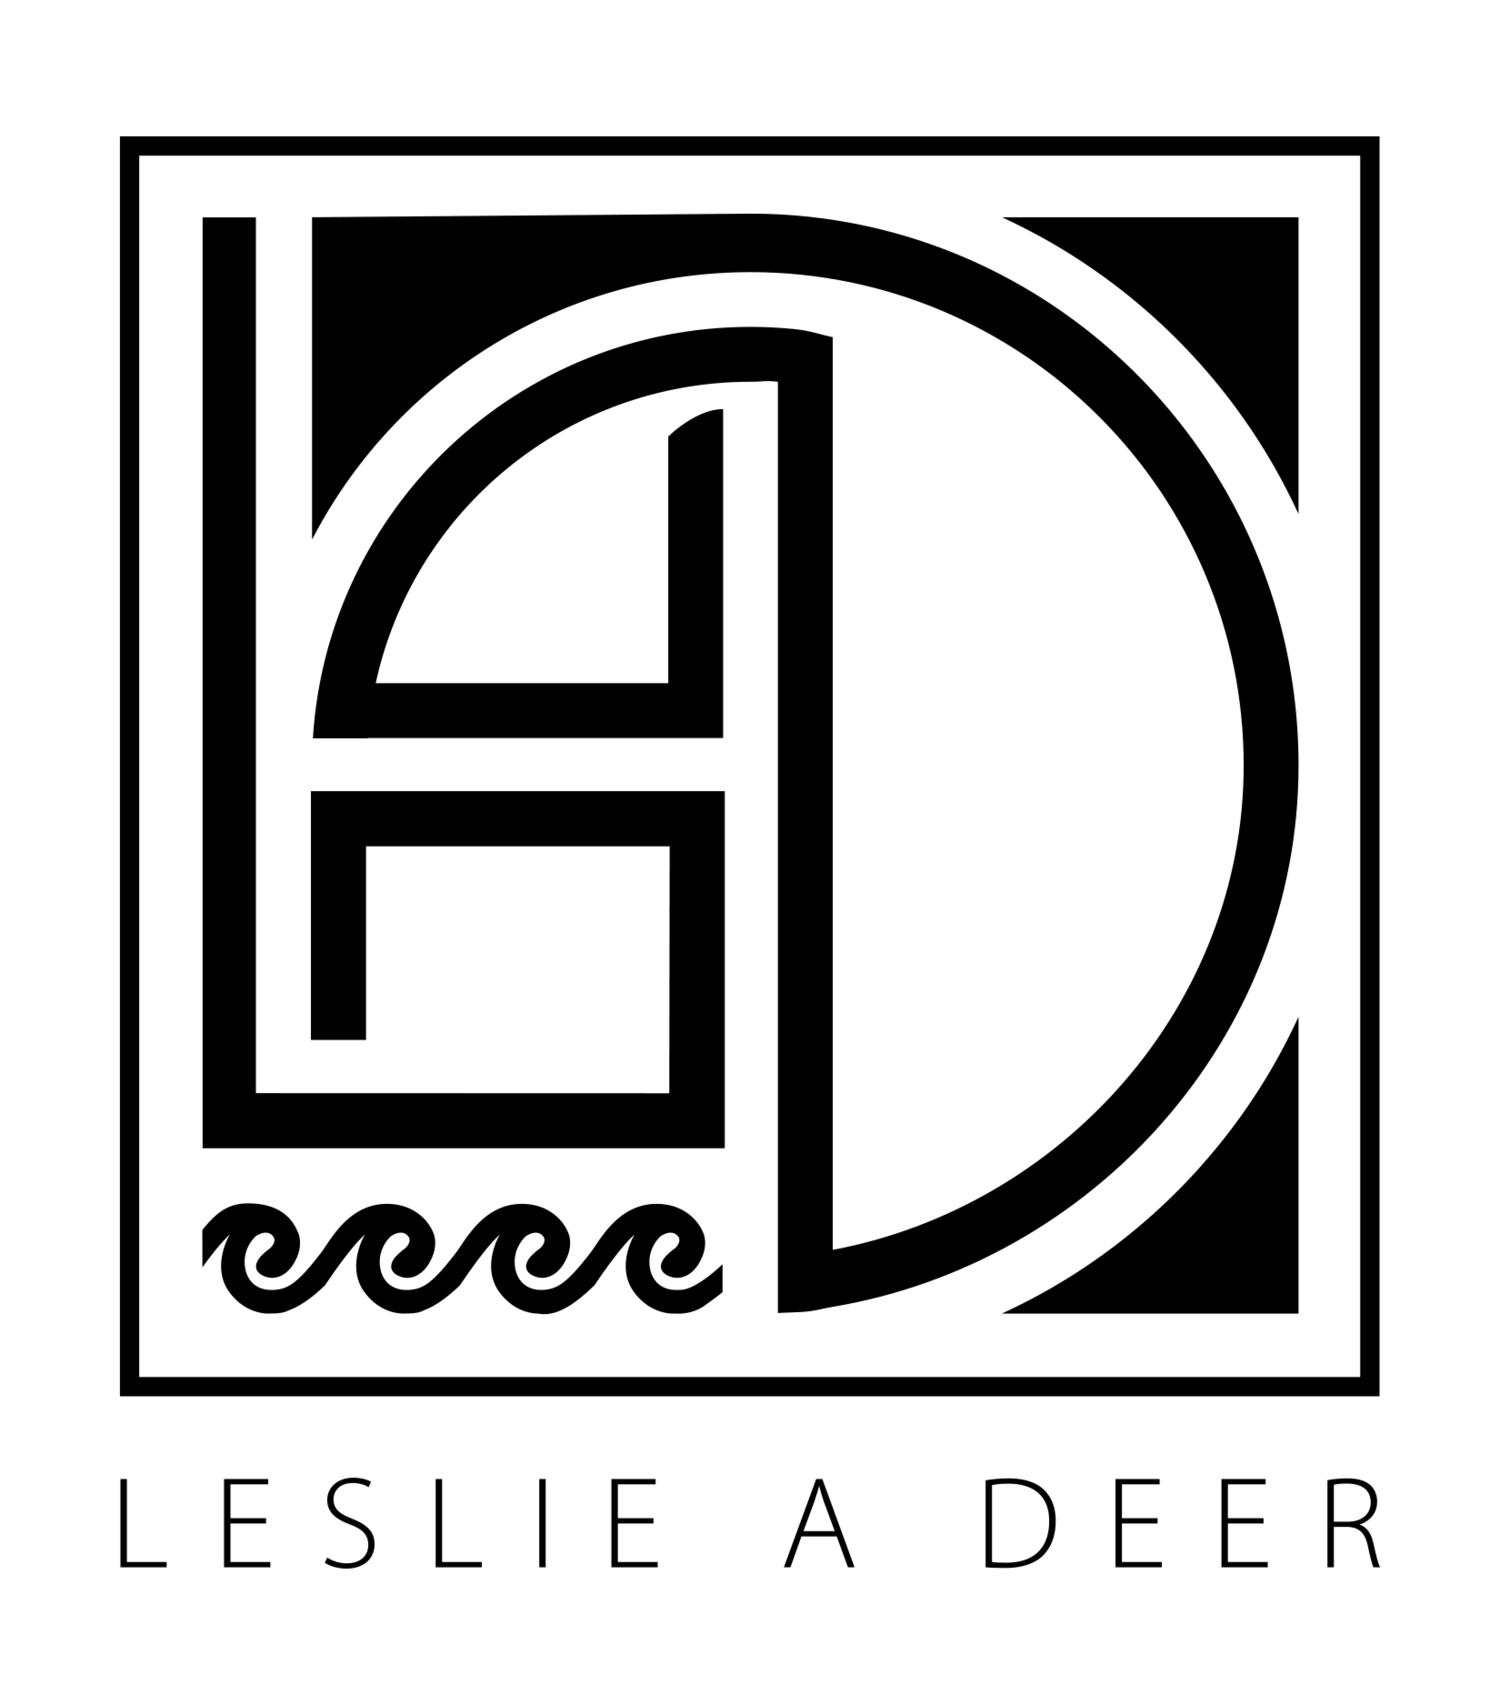 L A Deer Apparel